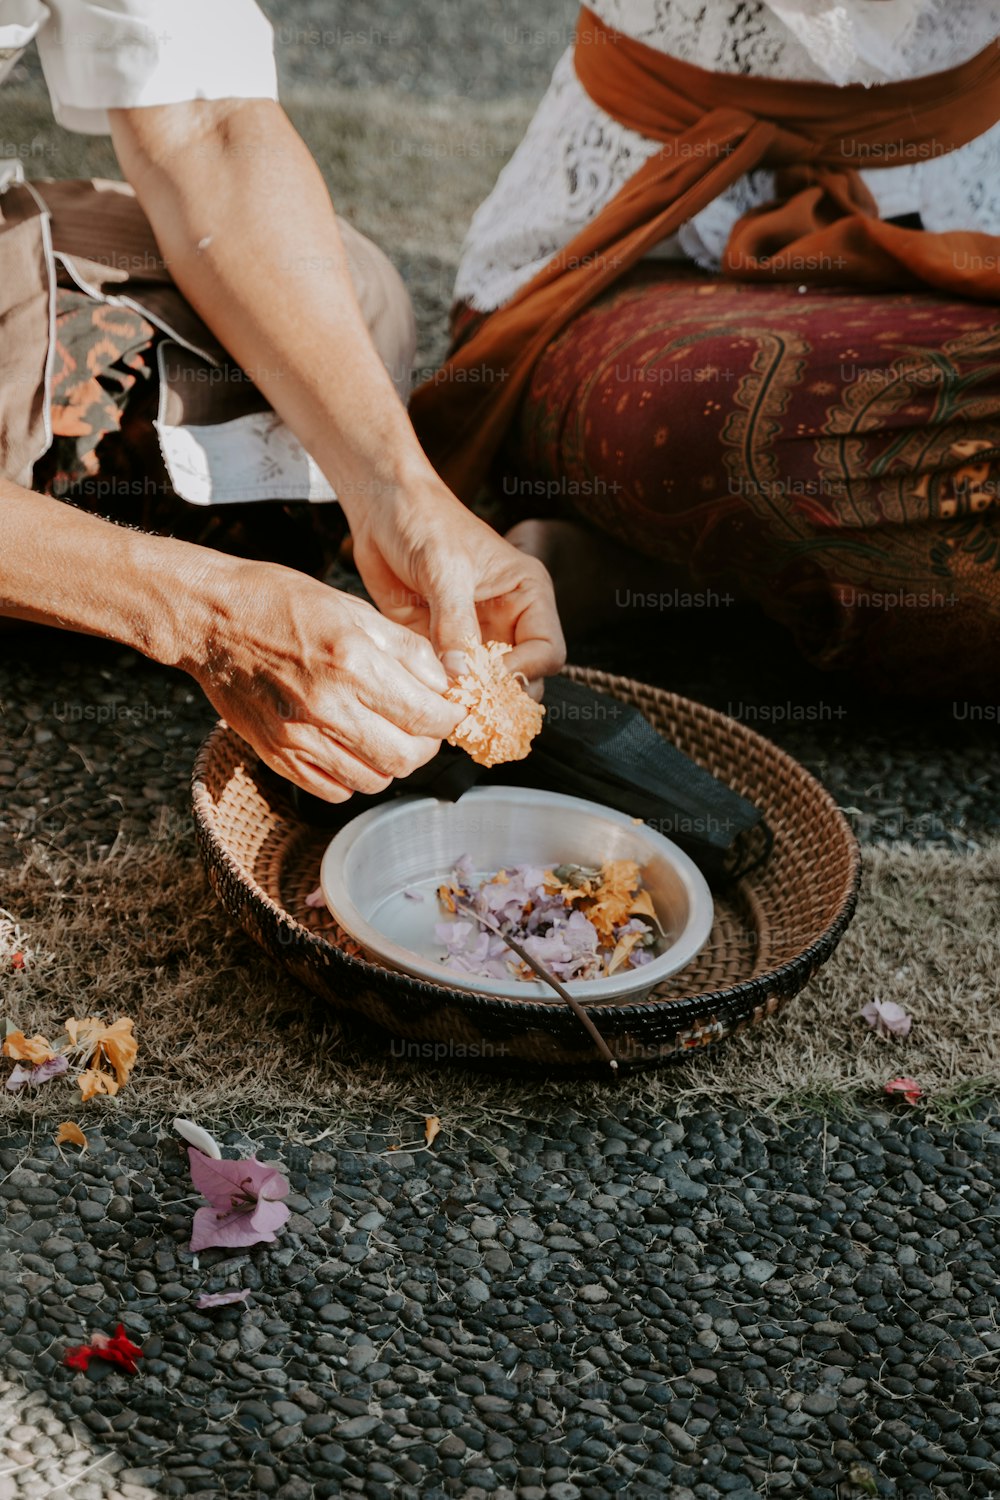 Una persona sentada en el suelo pelando comida de un plato